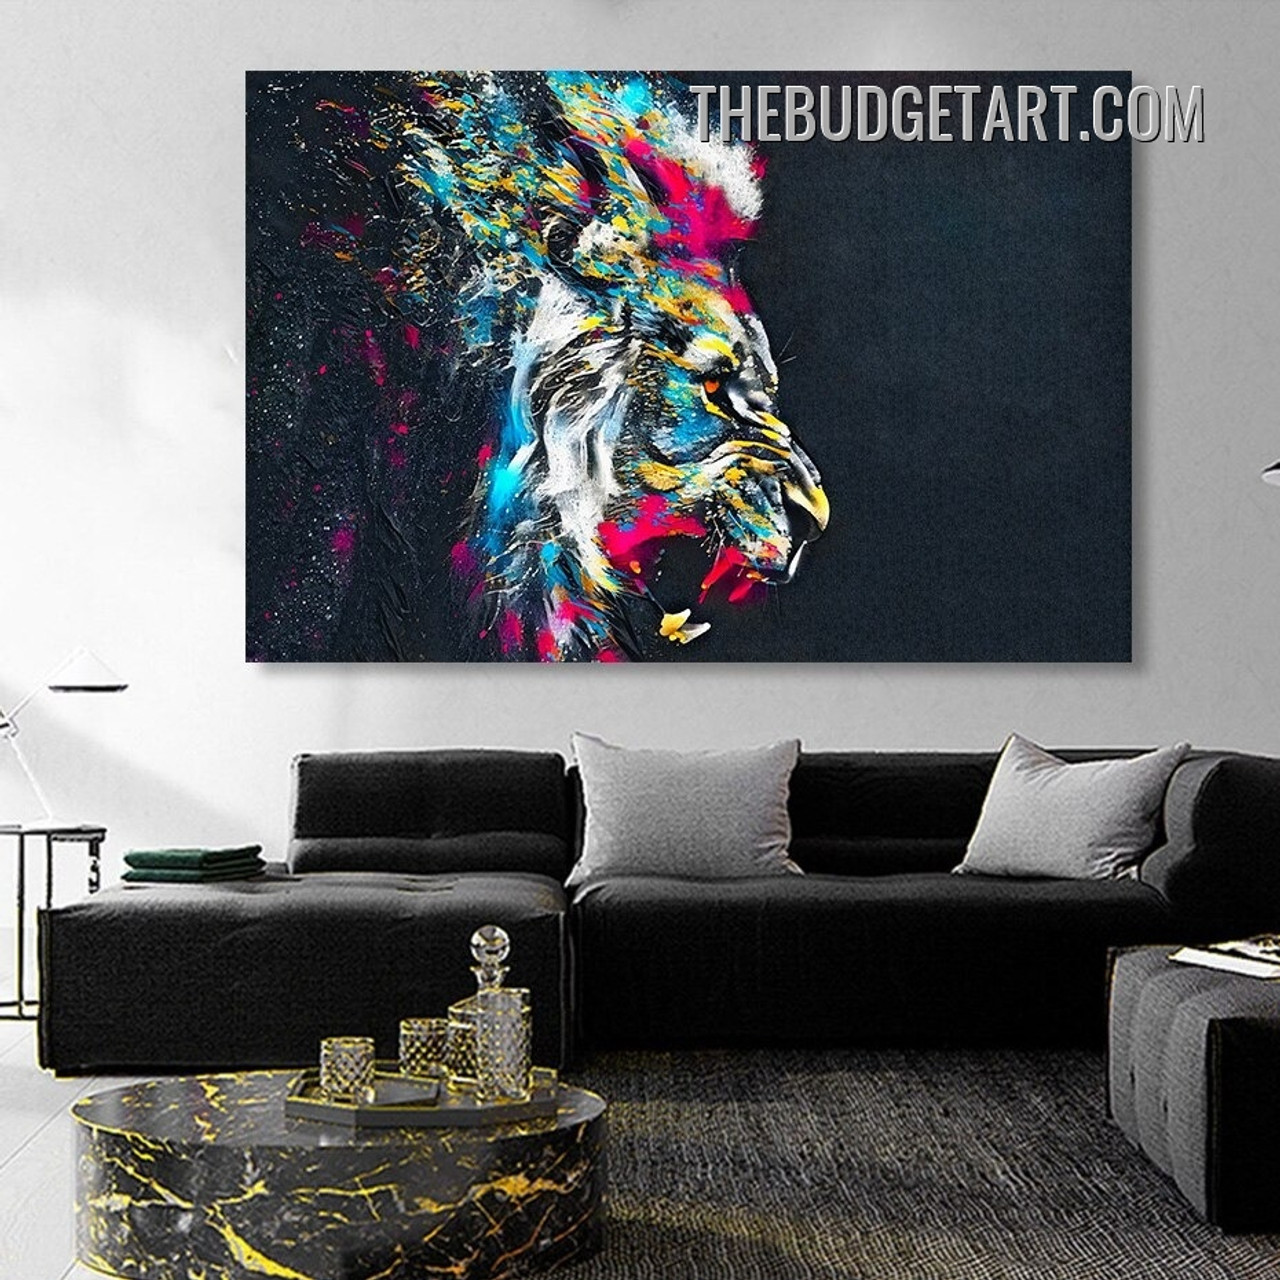 Wall Art Print, Lion Face